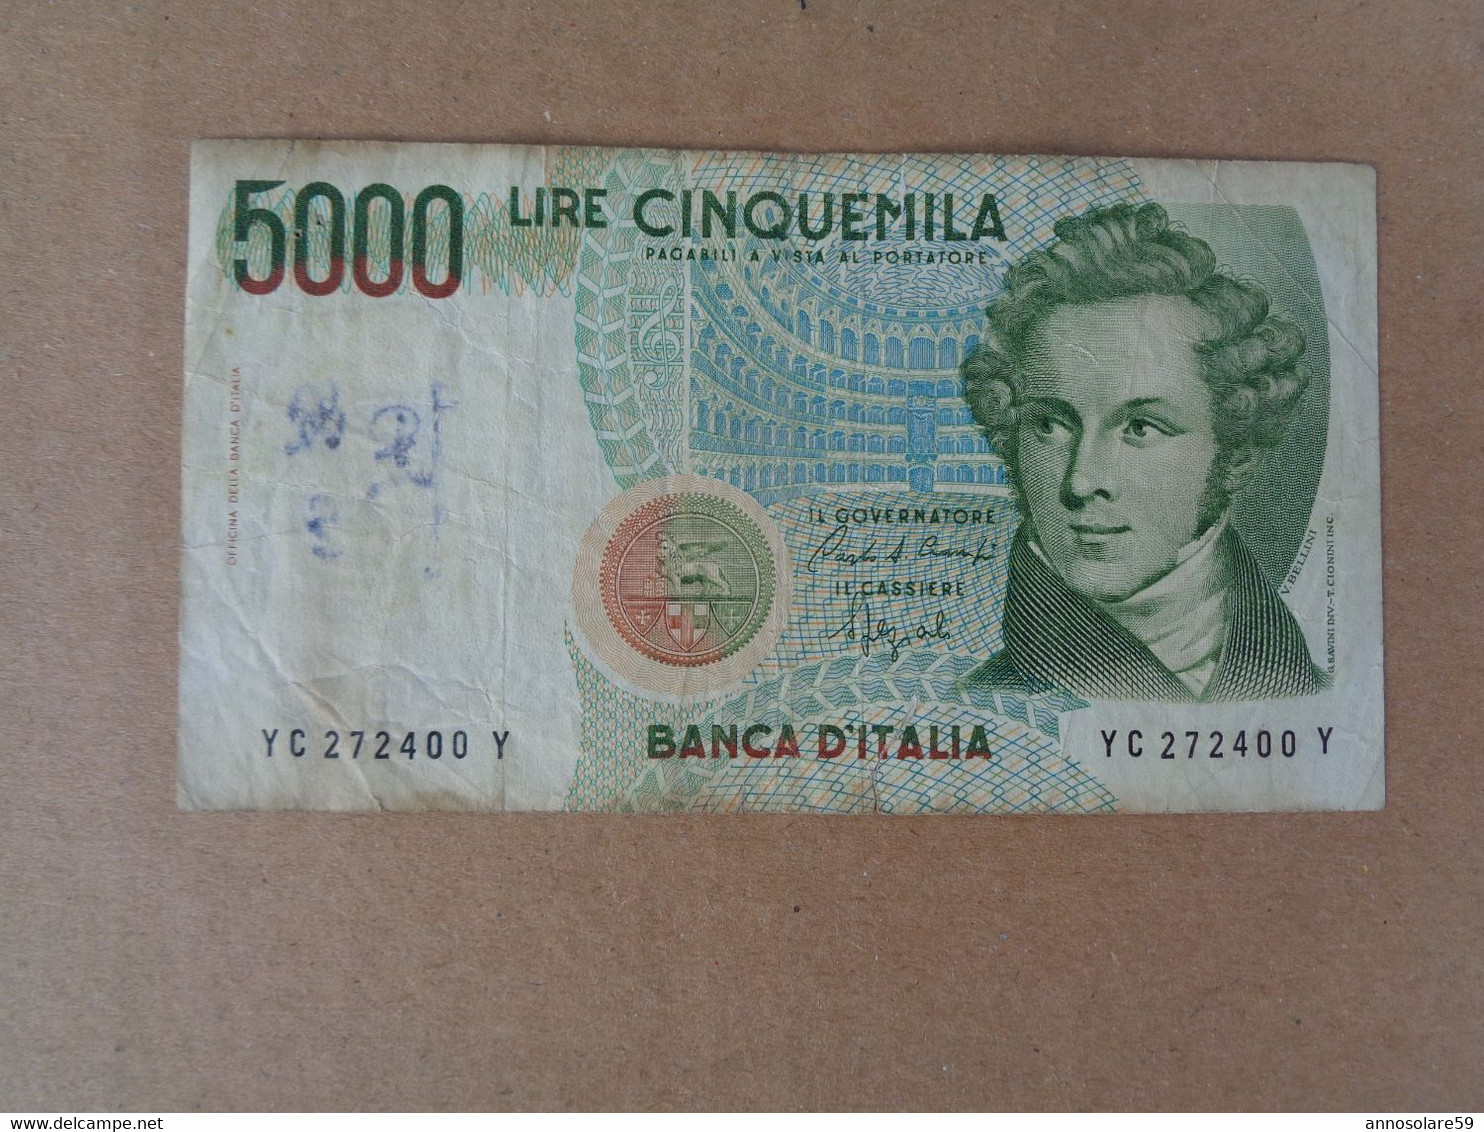 Banconota Bernini 5000 Lire Cinquemila Banca D'Italia - 5000 Lire